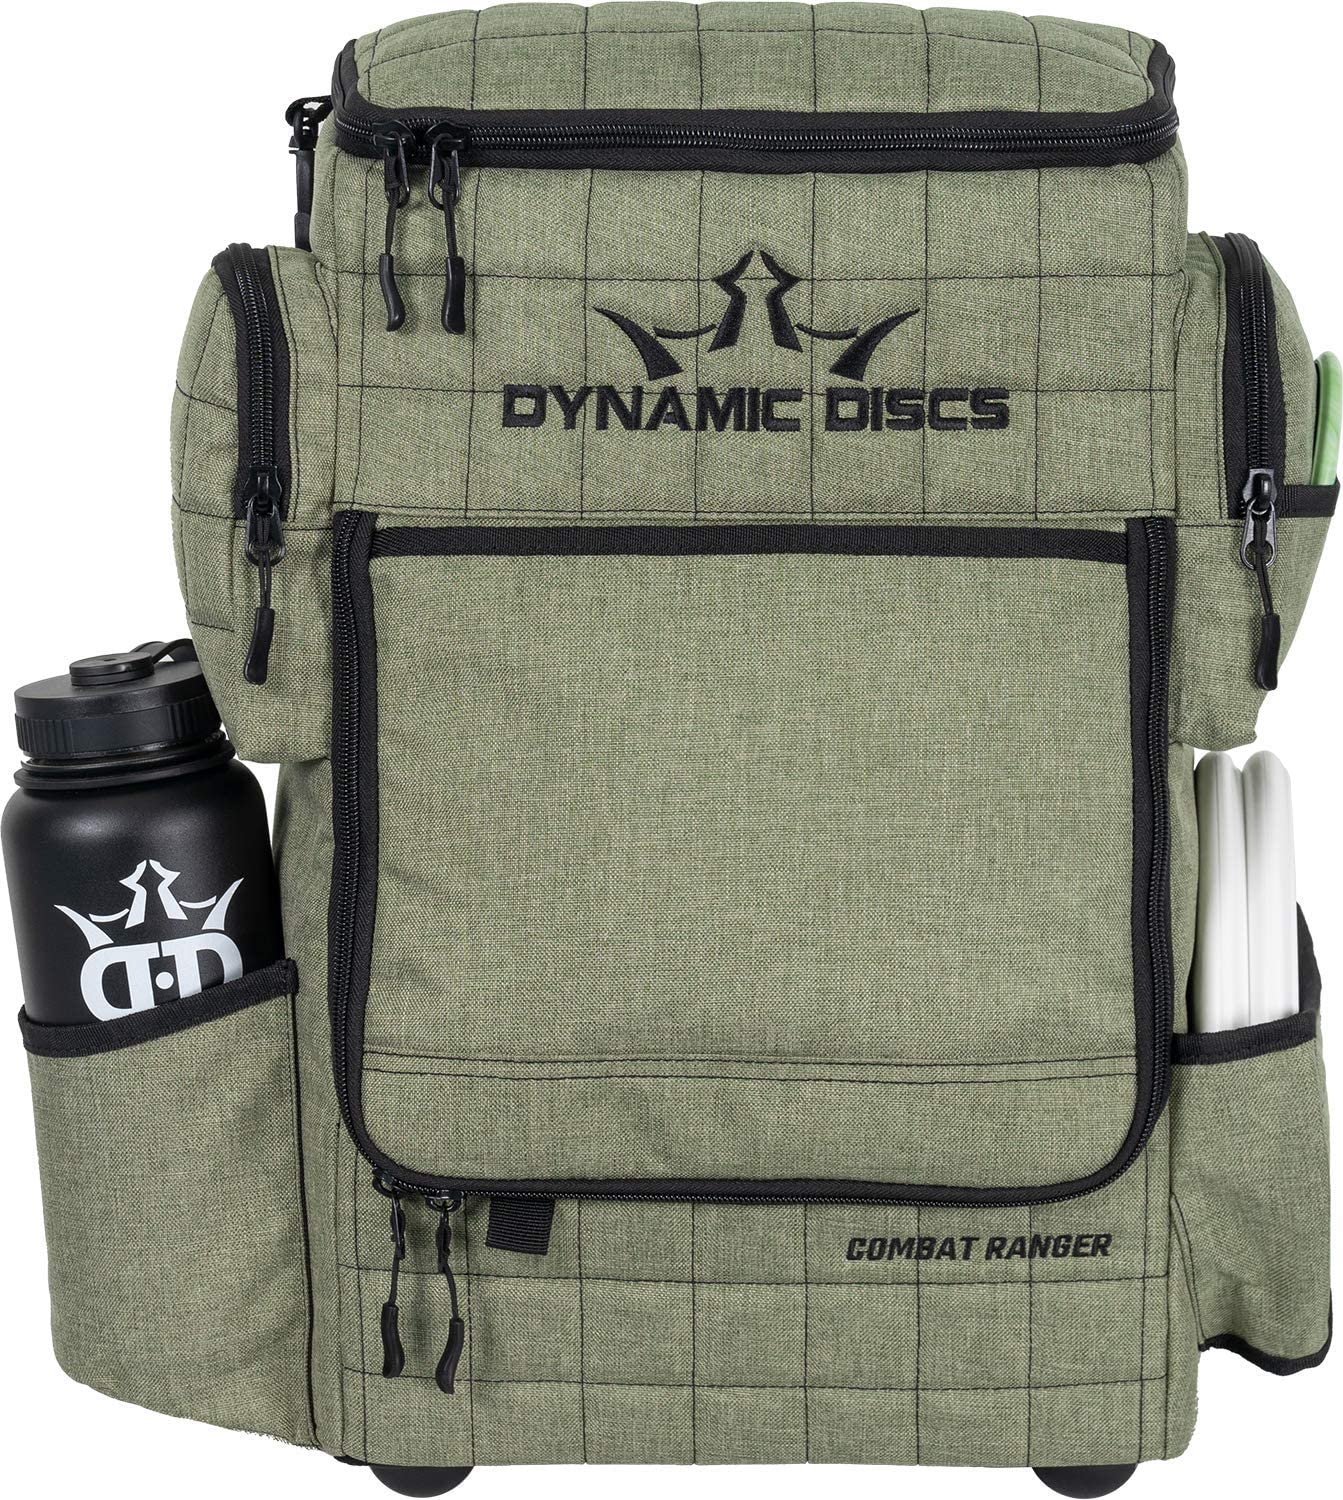 Dynamic Discs Combat Ranger backpack Disc Golf Bag - Olive - Dynamic Discs